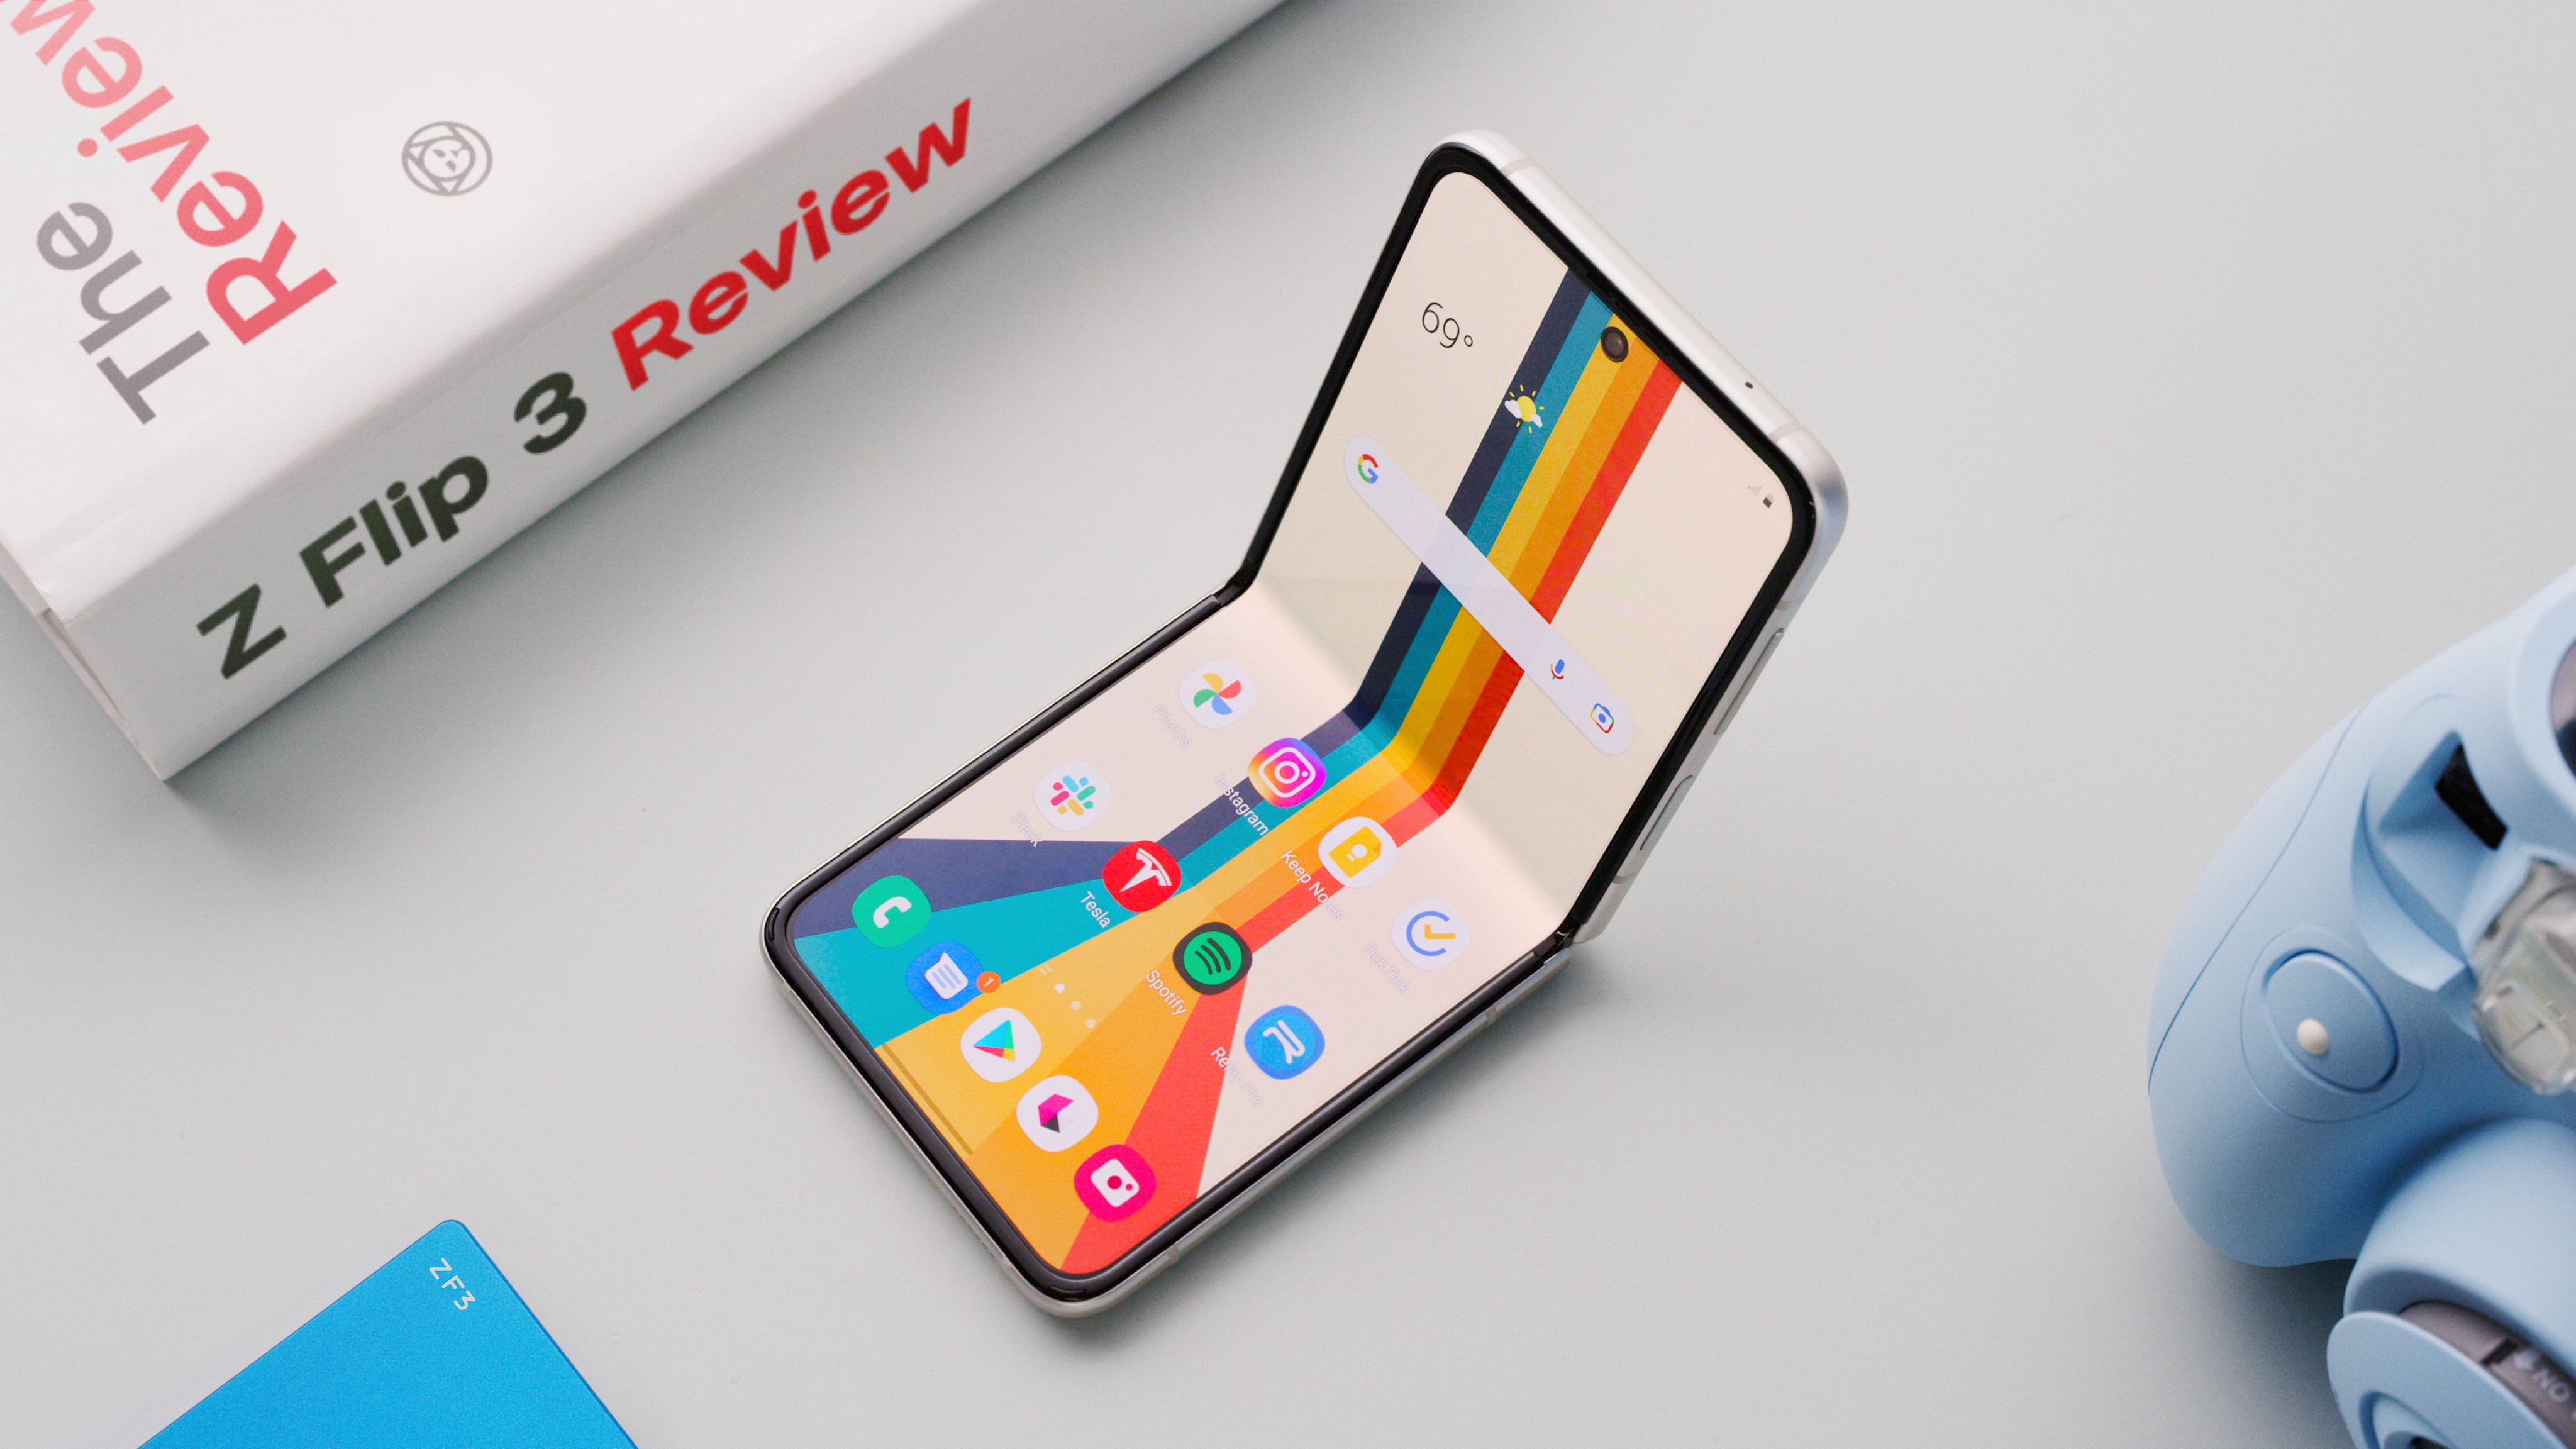 Bạn đang tìm kiếm đánh giá chi tiết về Samsung Z Flip 3? Đừng bỏ qua bài đánh giá chuyên sâu về sản phẩm này để biết thêm về thiết kế đột phá và hiệu năng ấn tượng mà chiếc điện thoại này mang lại.